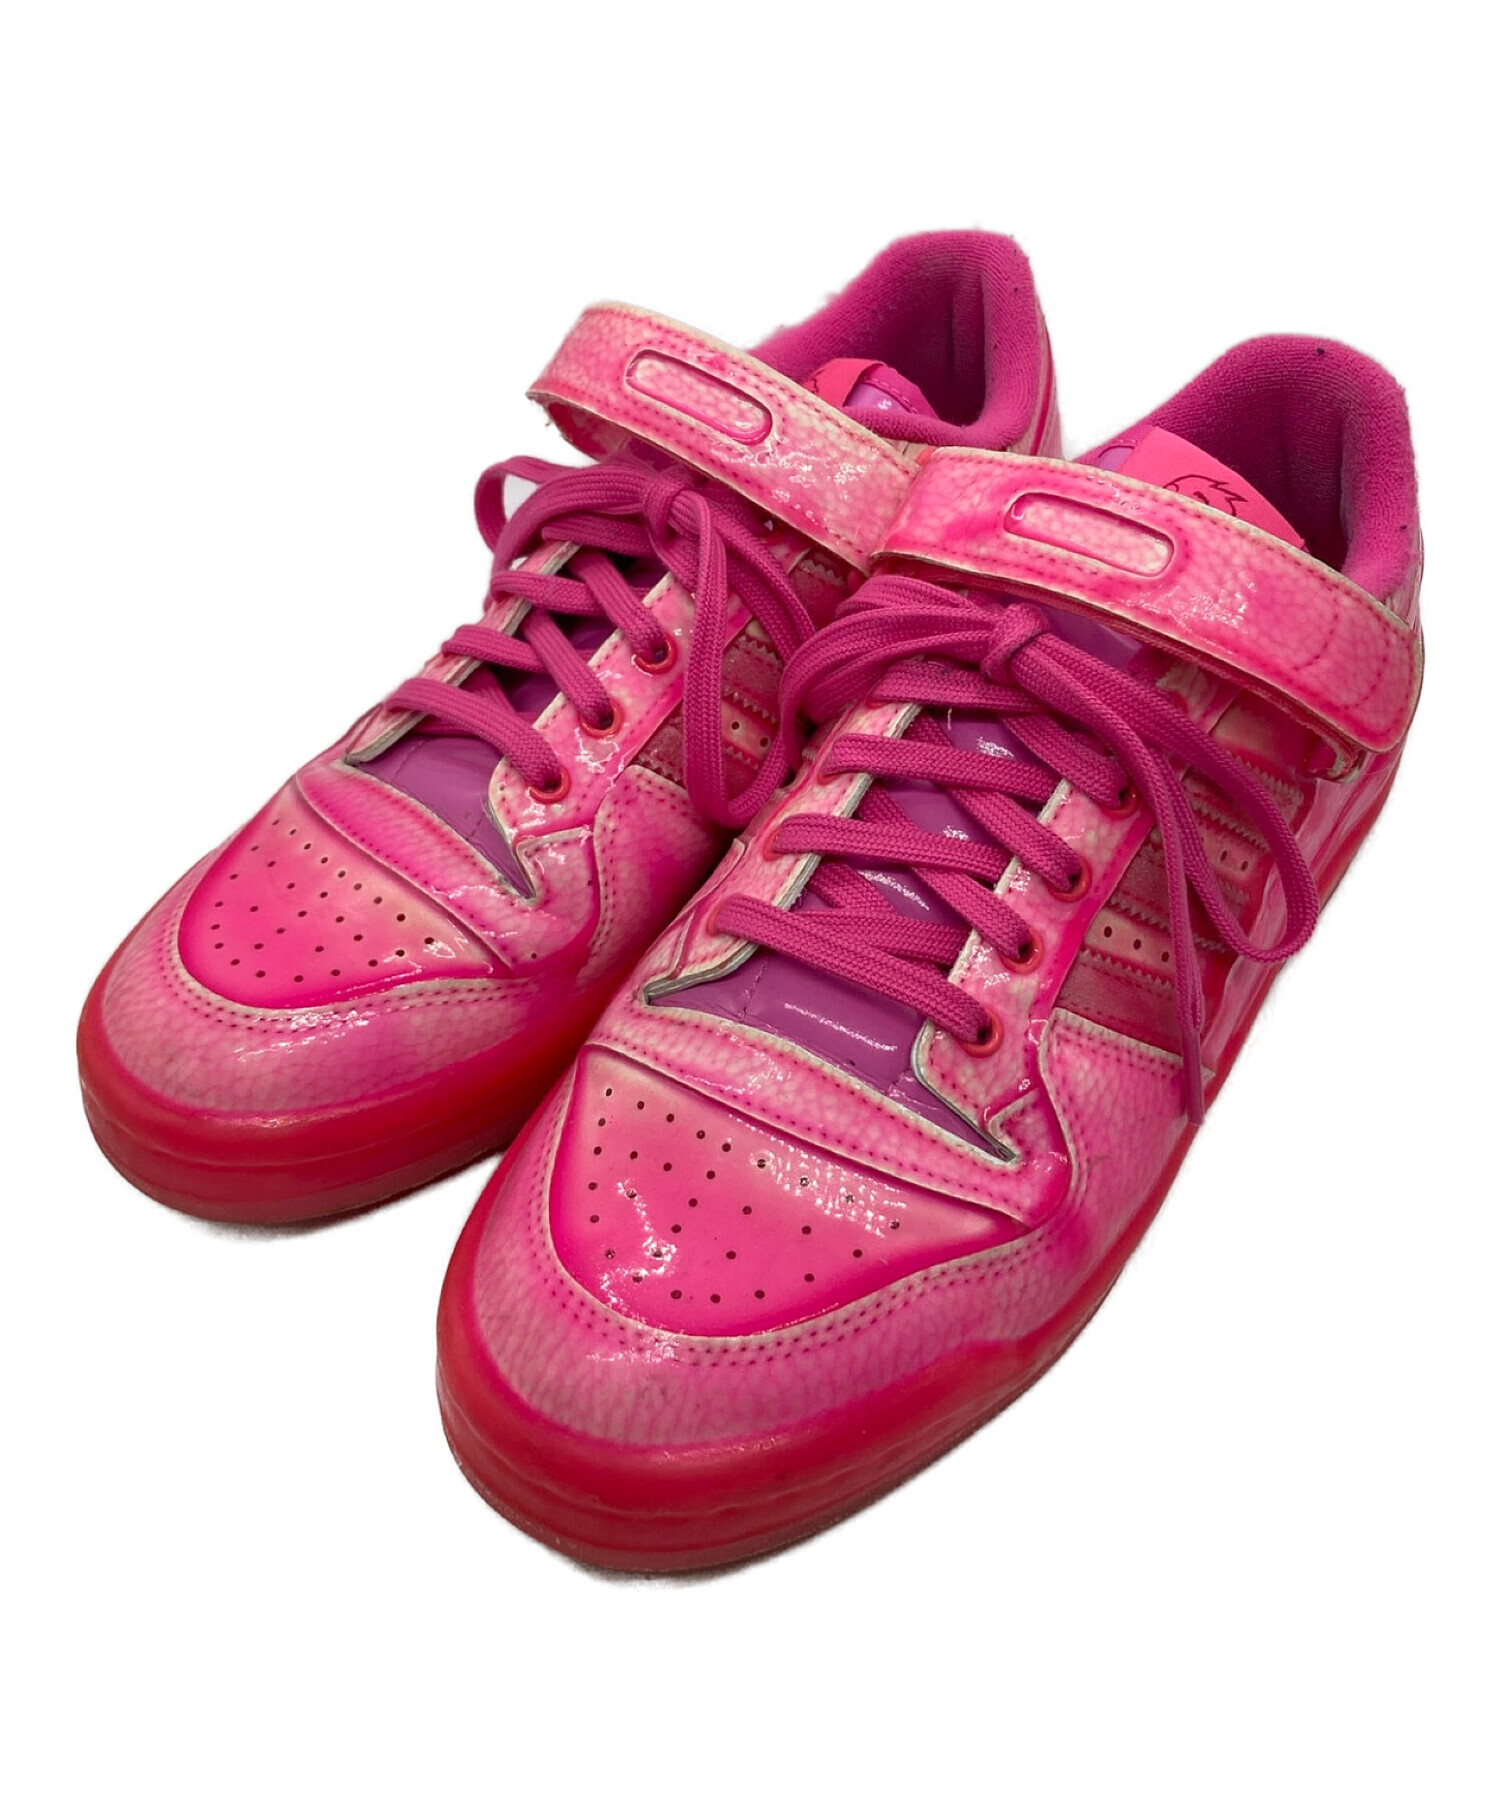 adidas (アディダス) JEREMY SCOTT (ジェレミースコット) FORUM LOW ピンク サイズ:SIZE 27cm